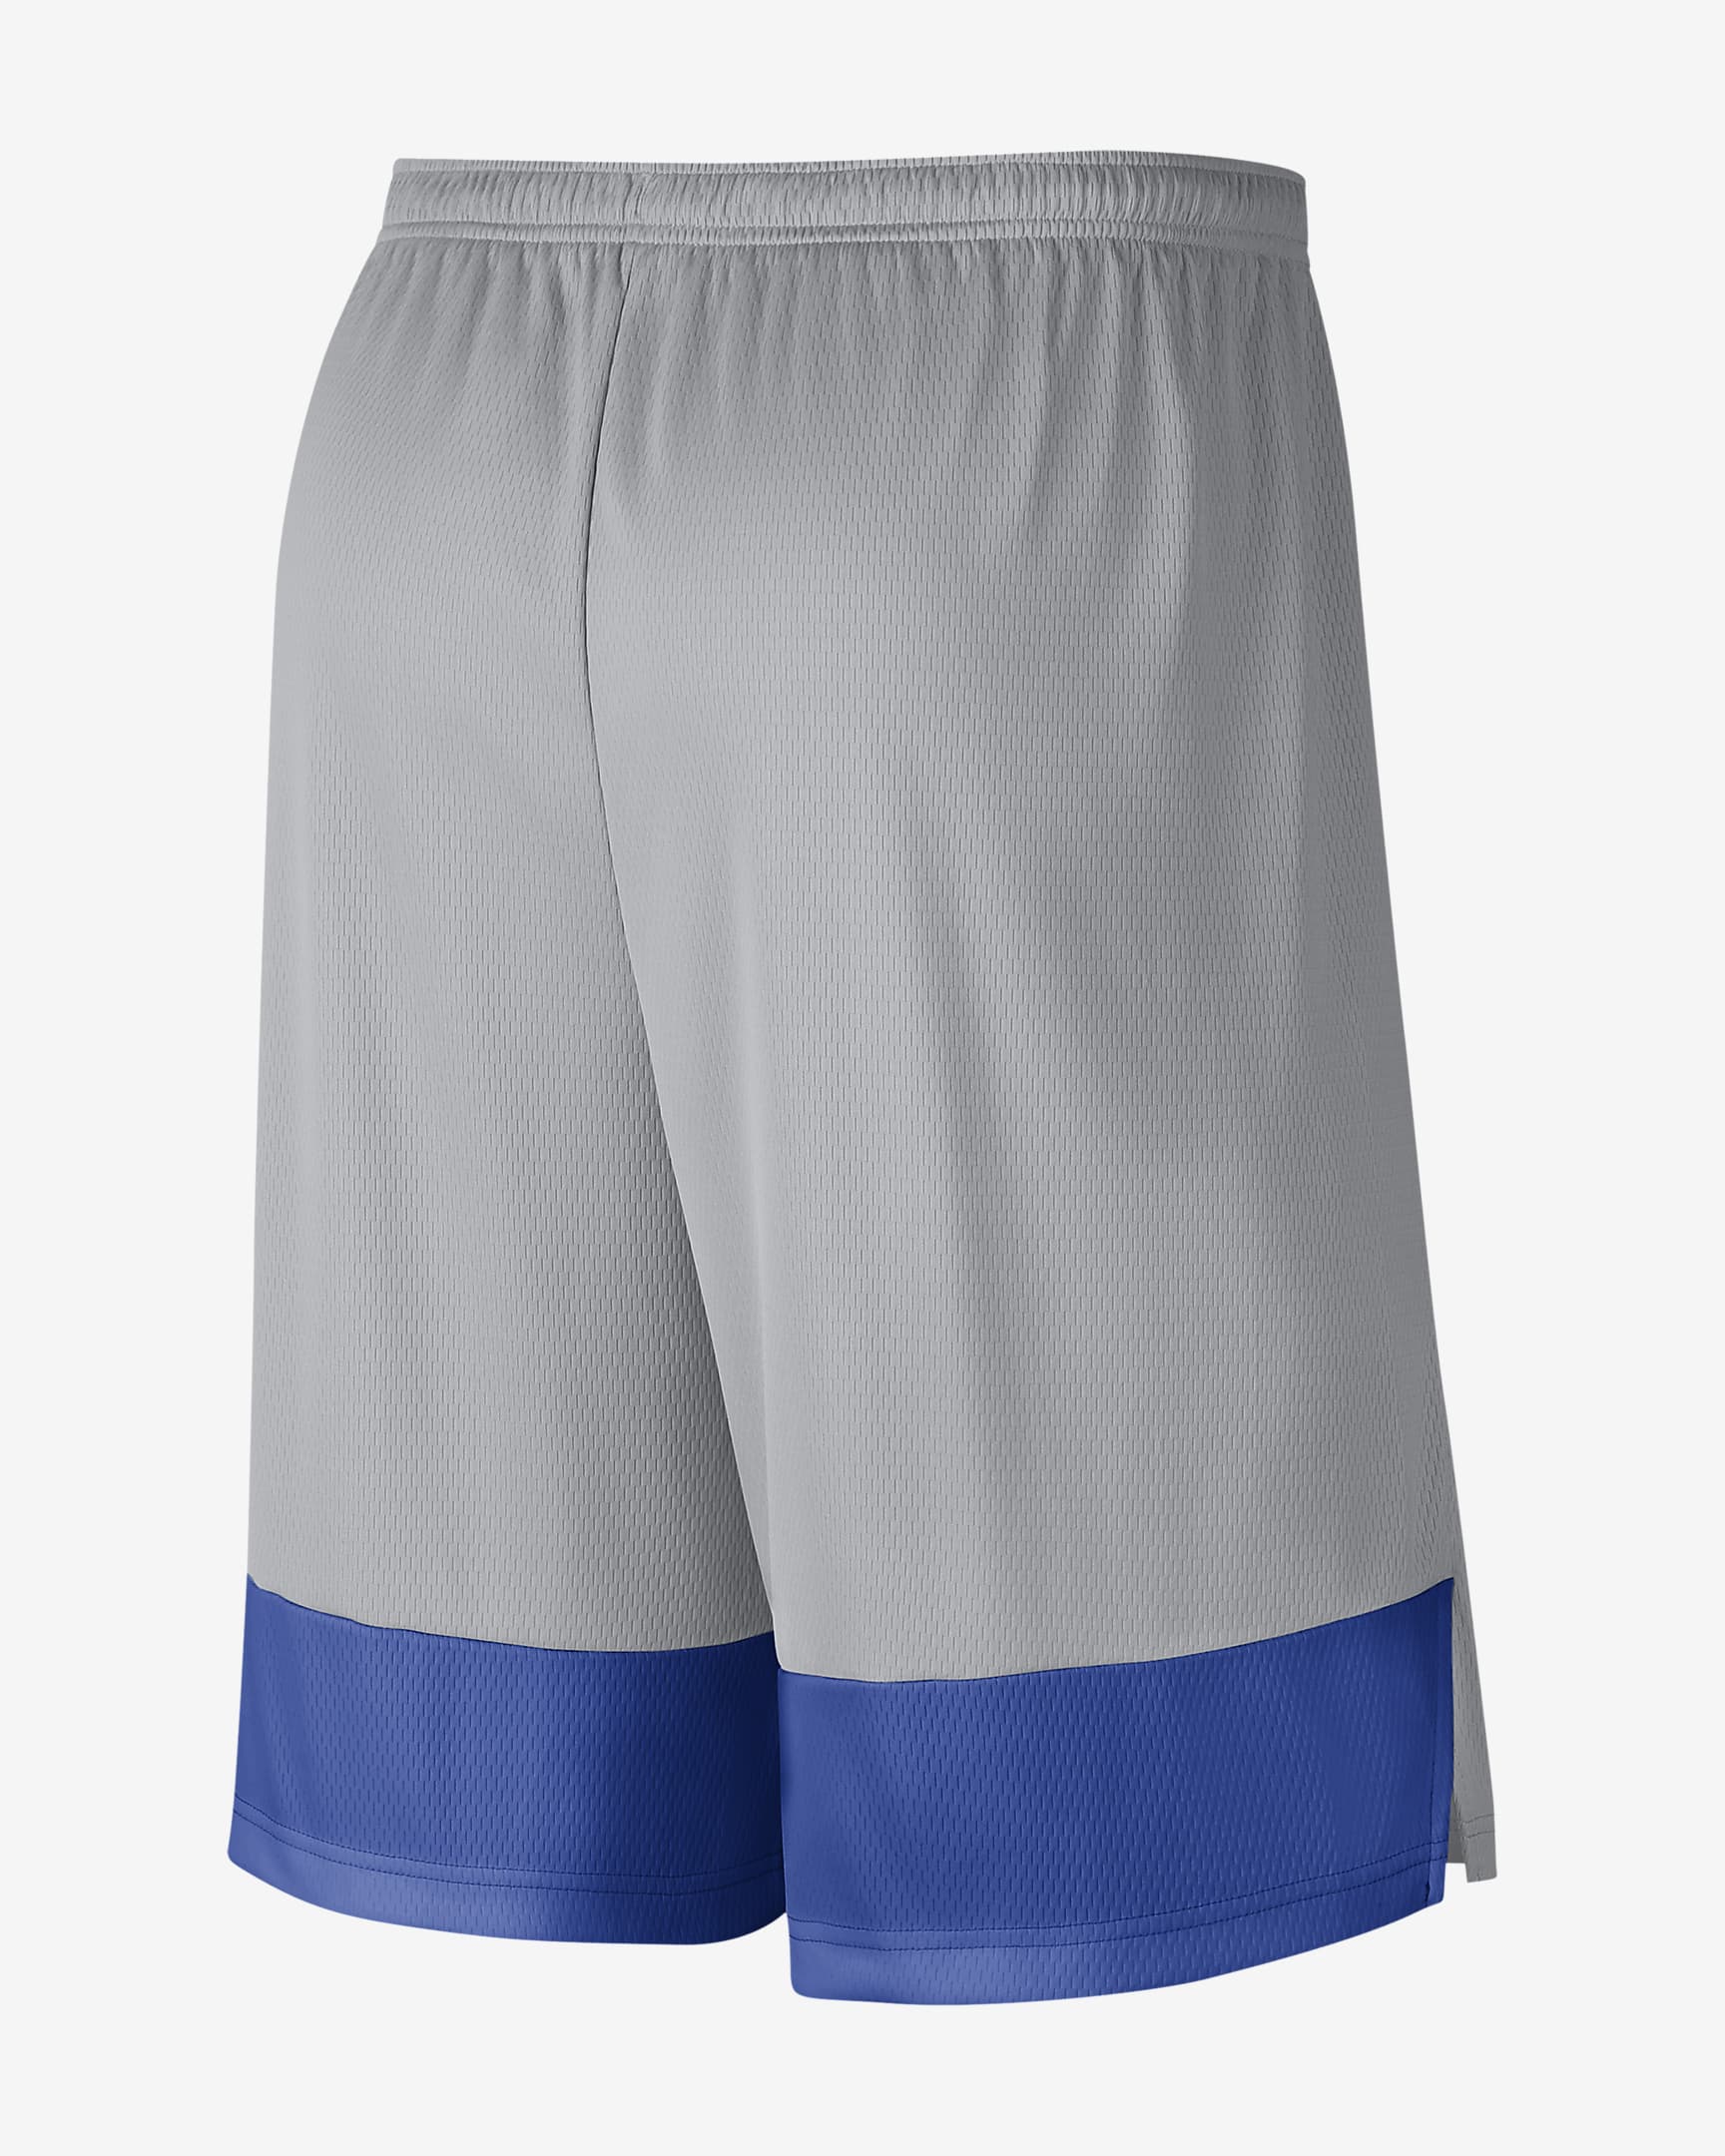 Shorts para hombre Nike College Dri-FIT (Duke). Nike.com